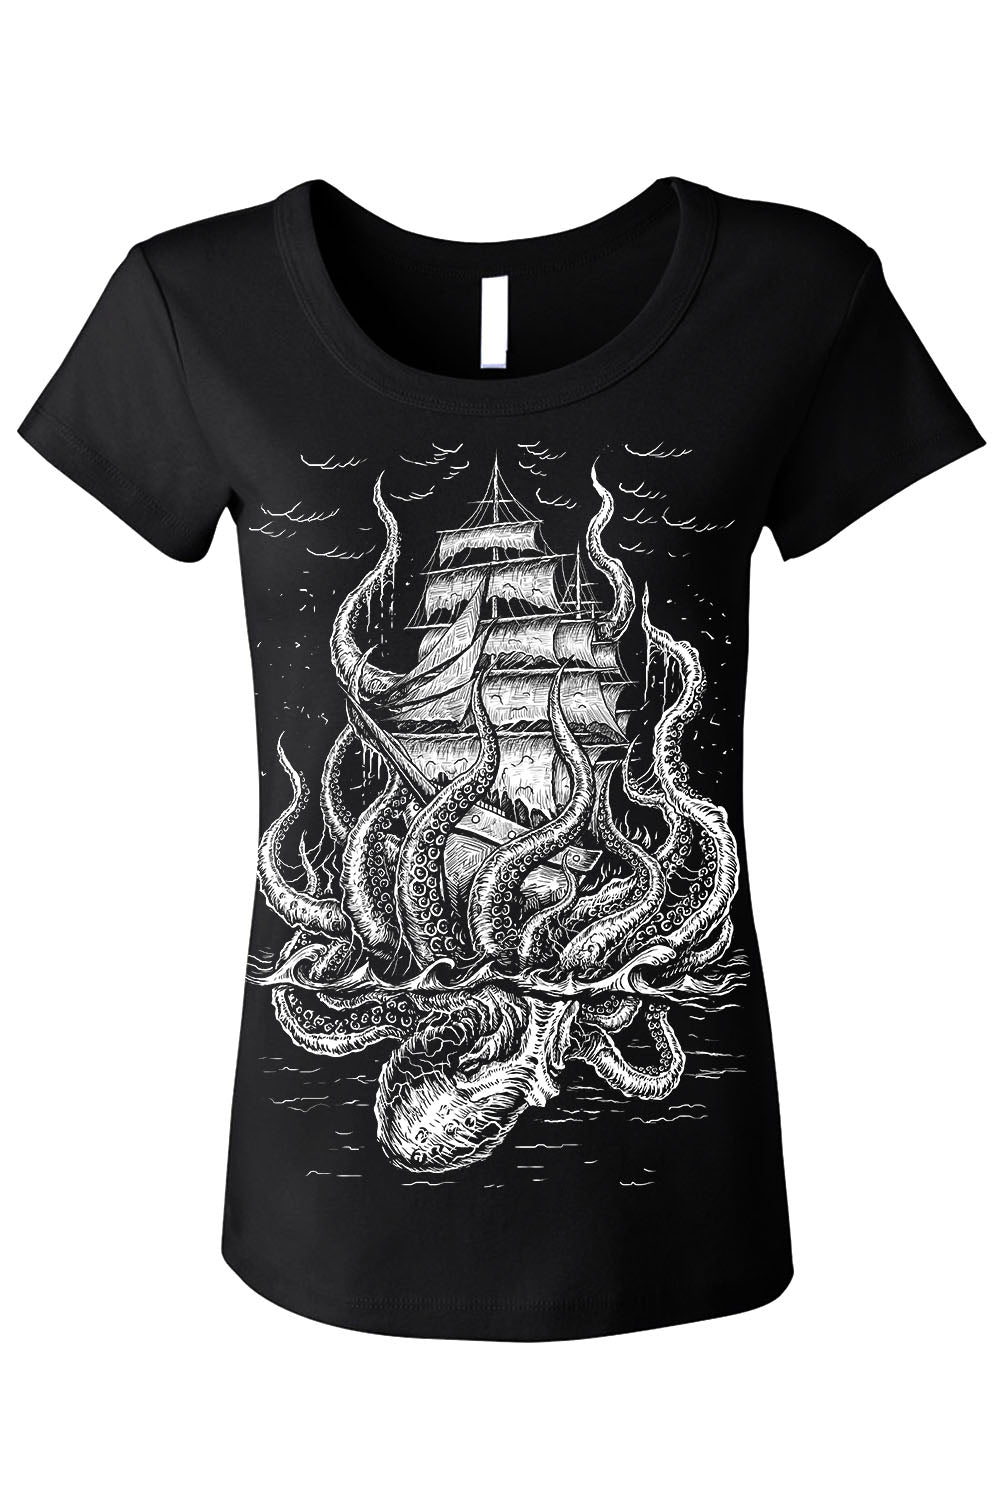 Release The Kraken T-shirt –